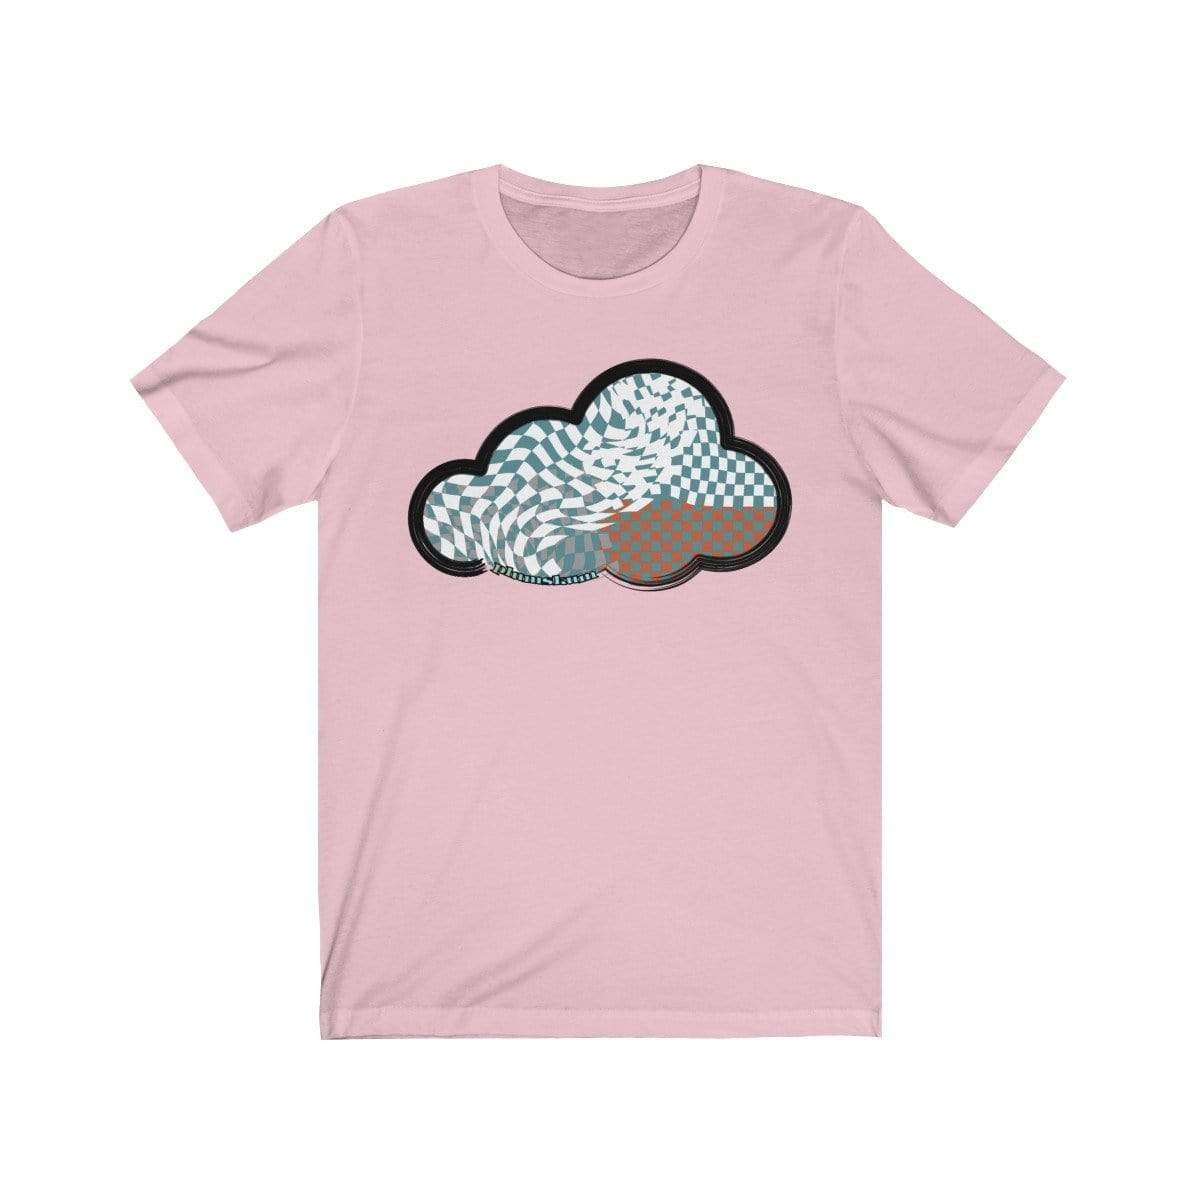 Printify T-Shirt Pink / M Checker Art Clouds T-Shirt